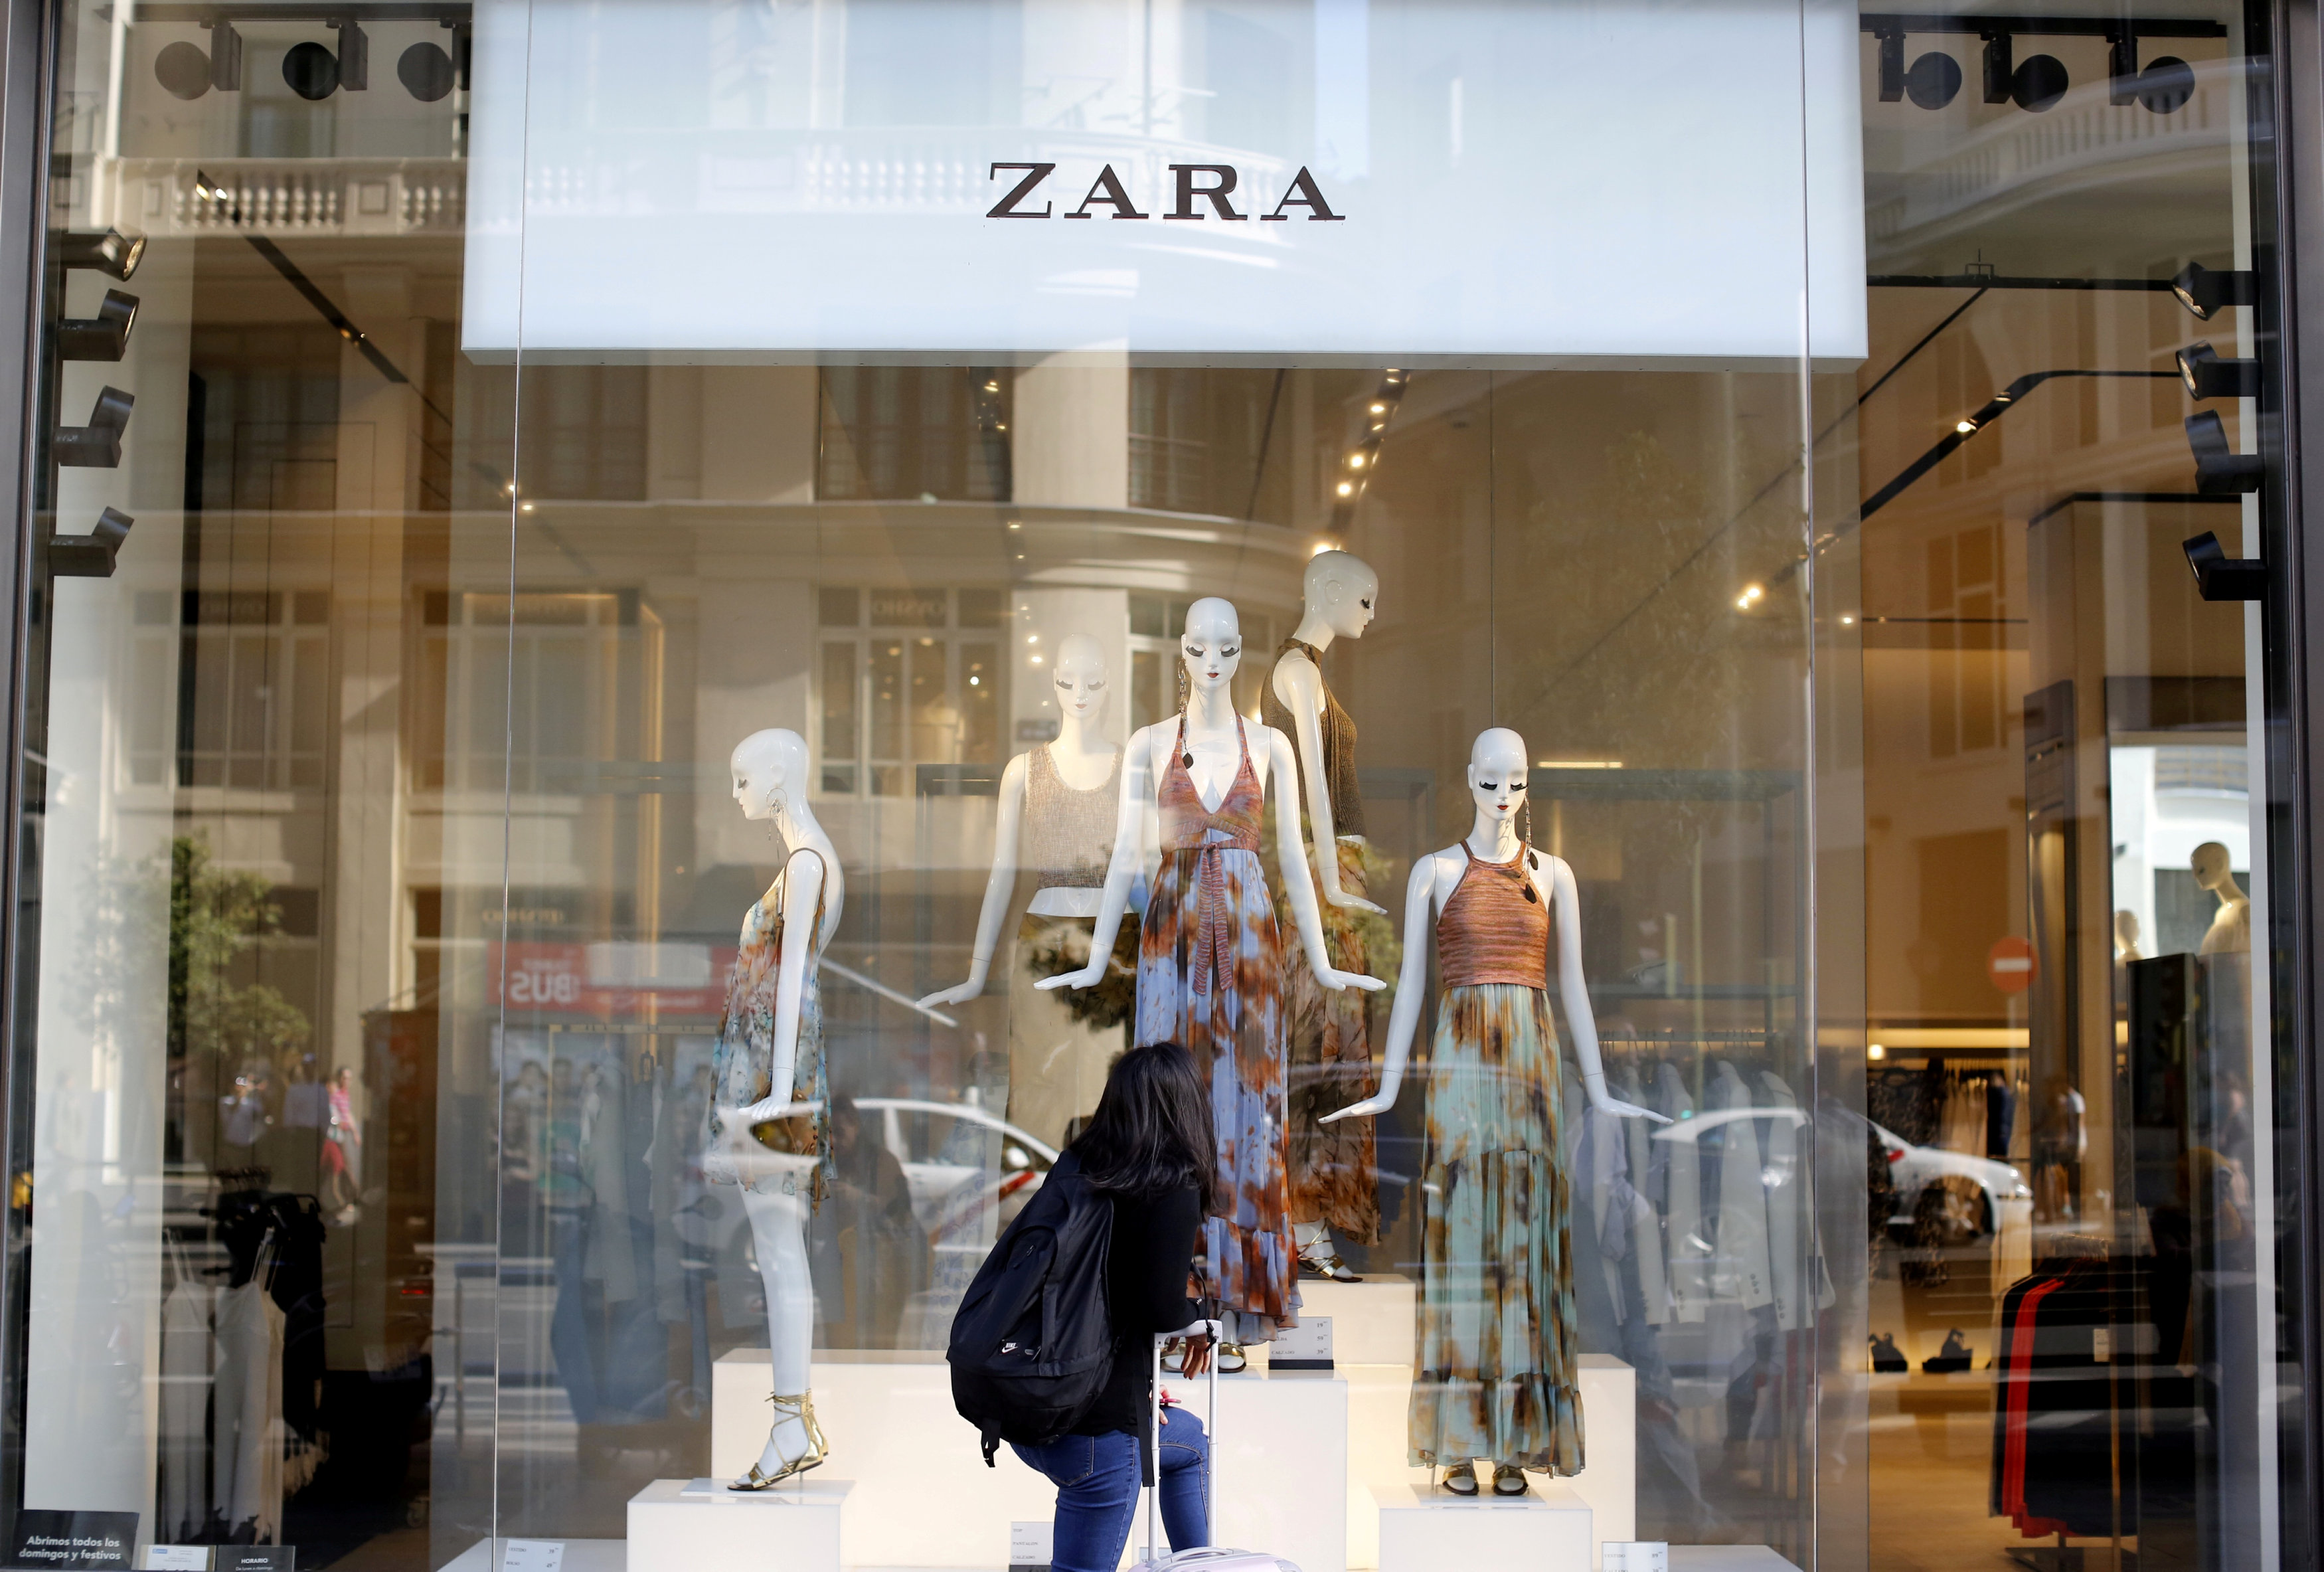 Γερμανός καλλιτέχνης κατηγορεί τη Zara για κλοπή πνευματικής ιδιοκτησίας